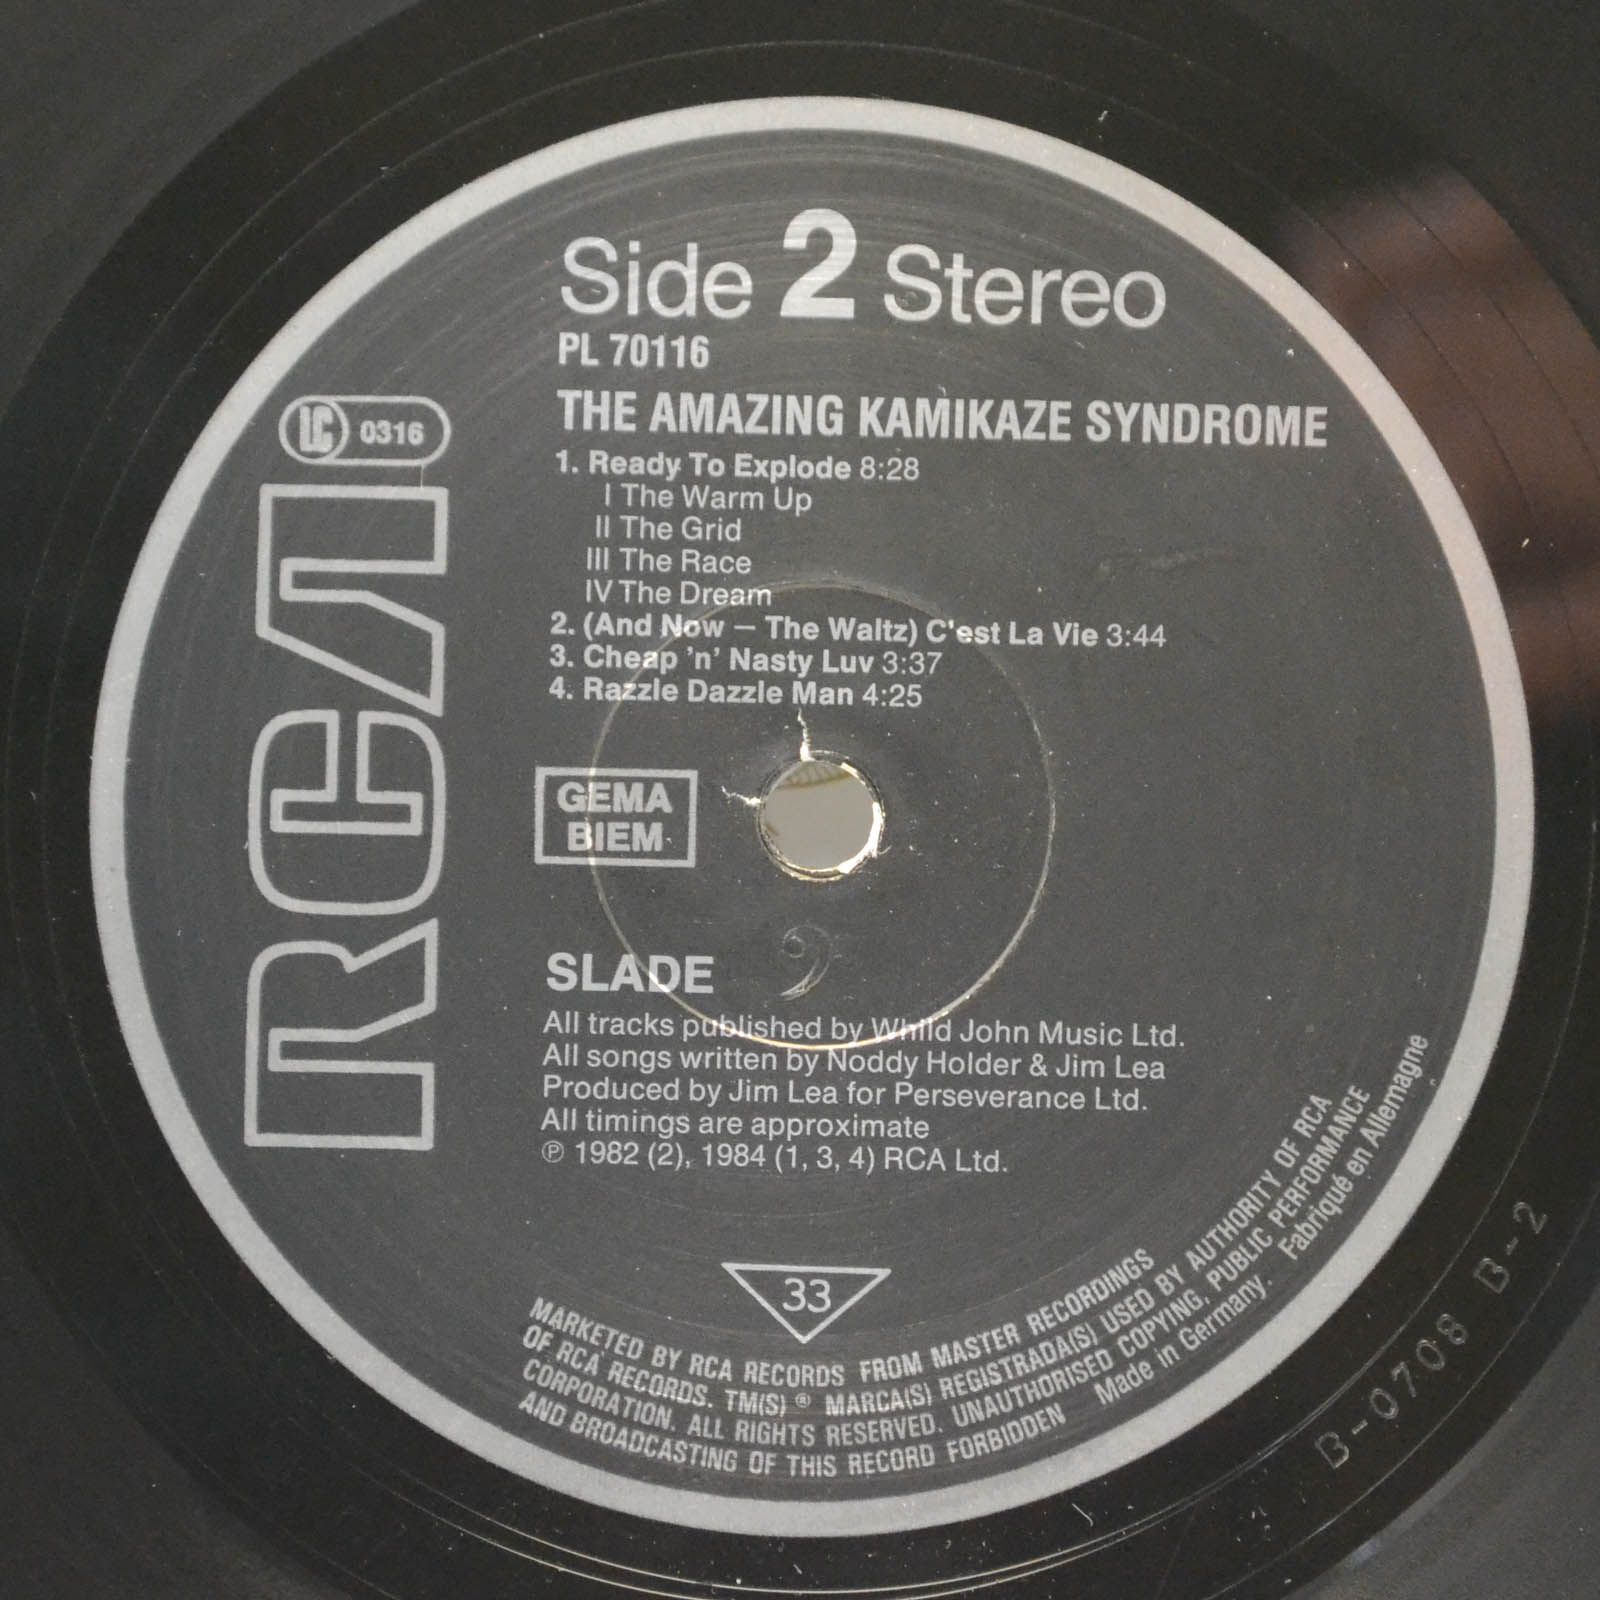 Slade — The Amazing Kamikaze Syndrome, 1983